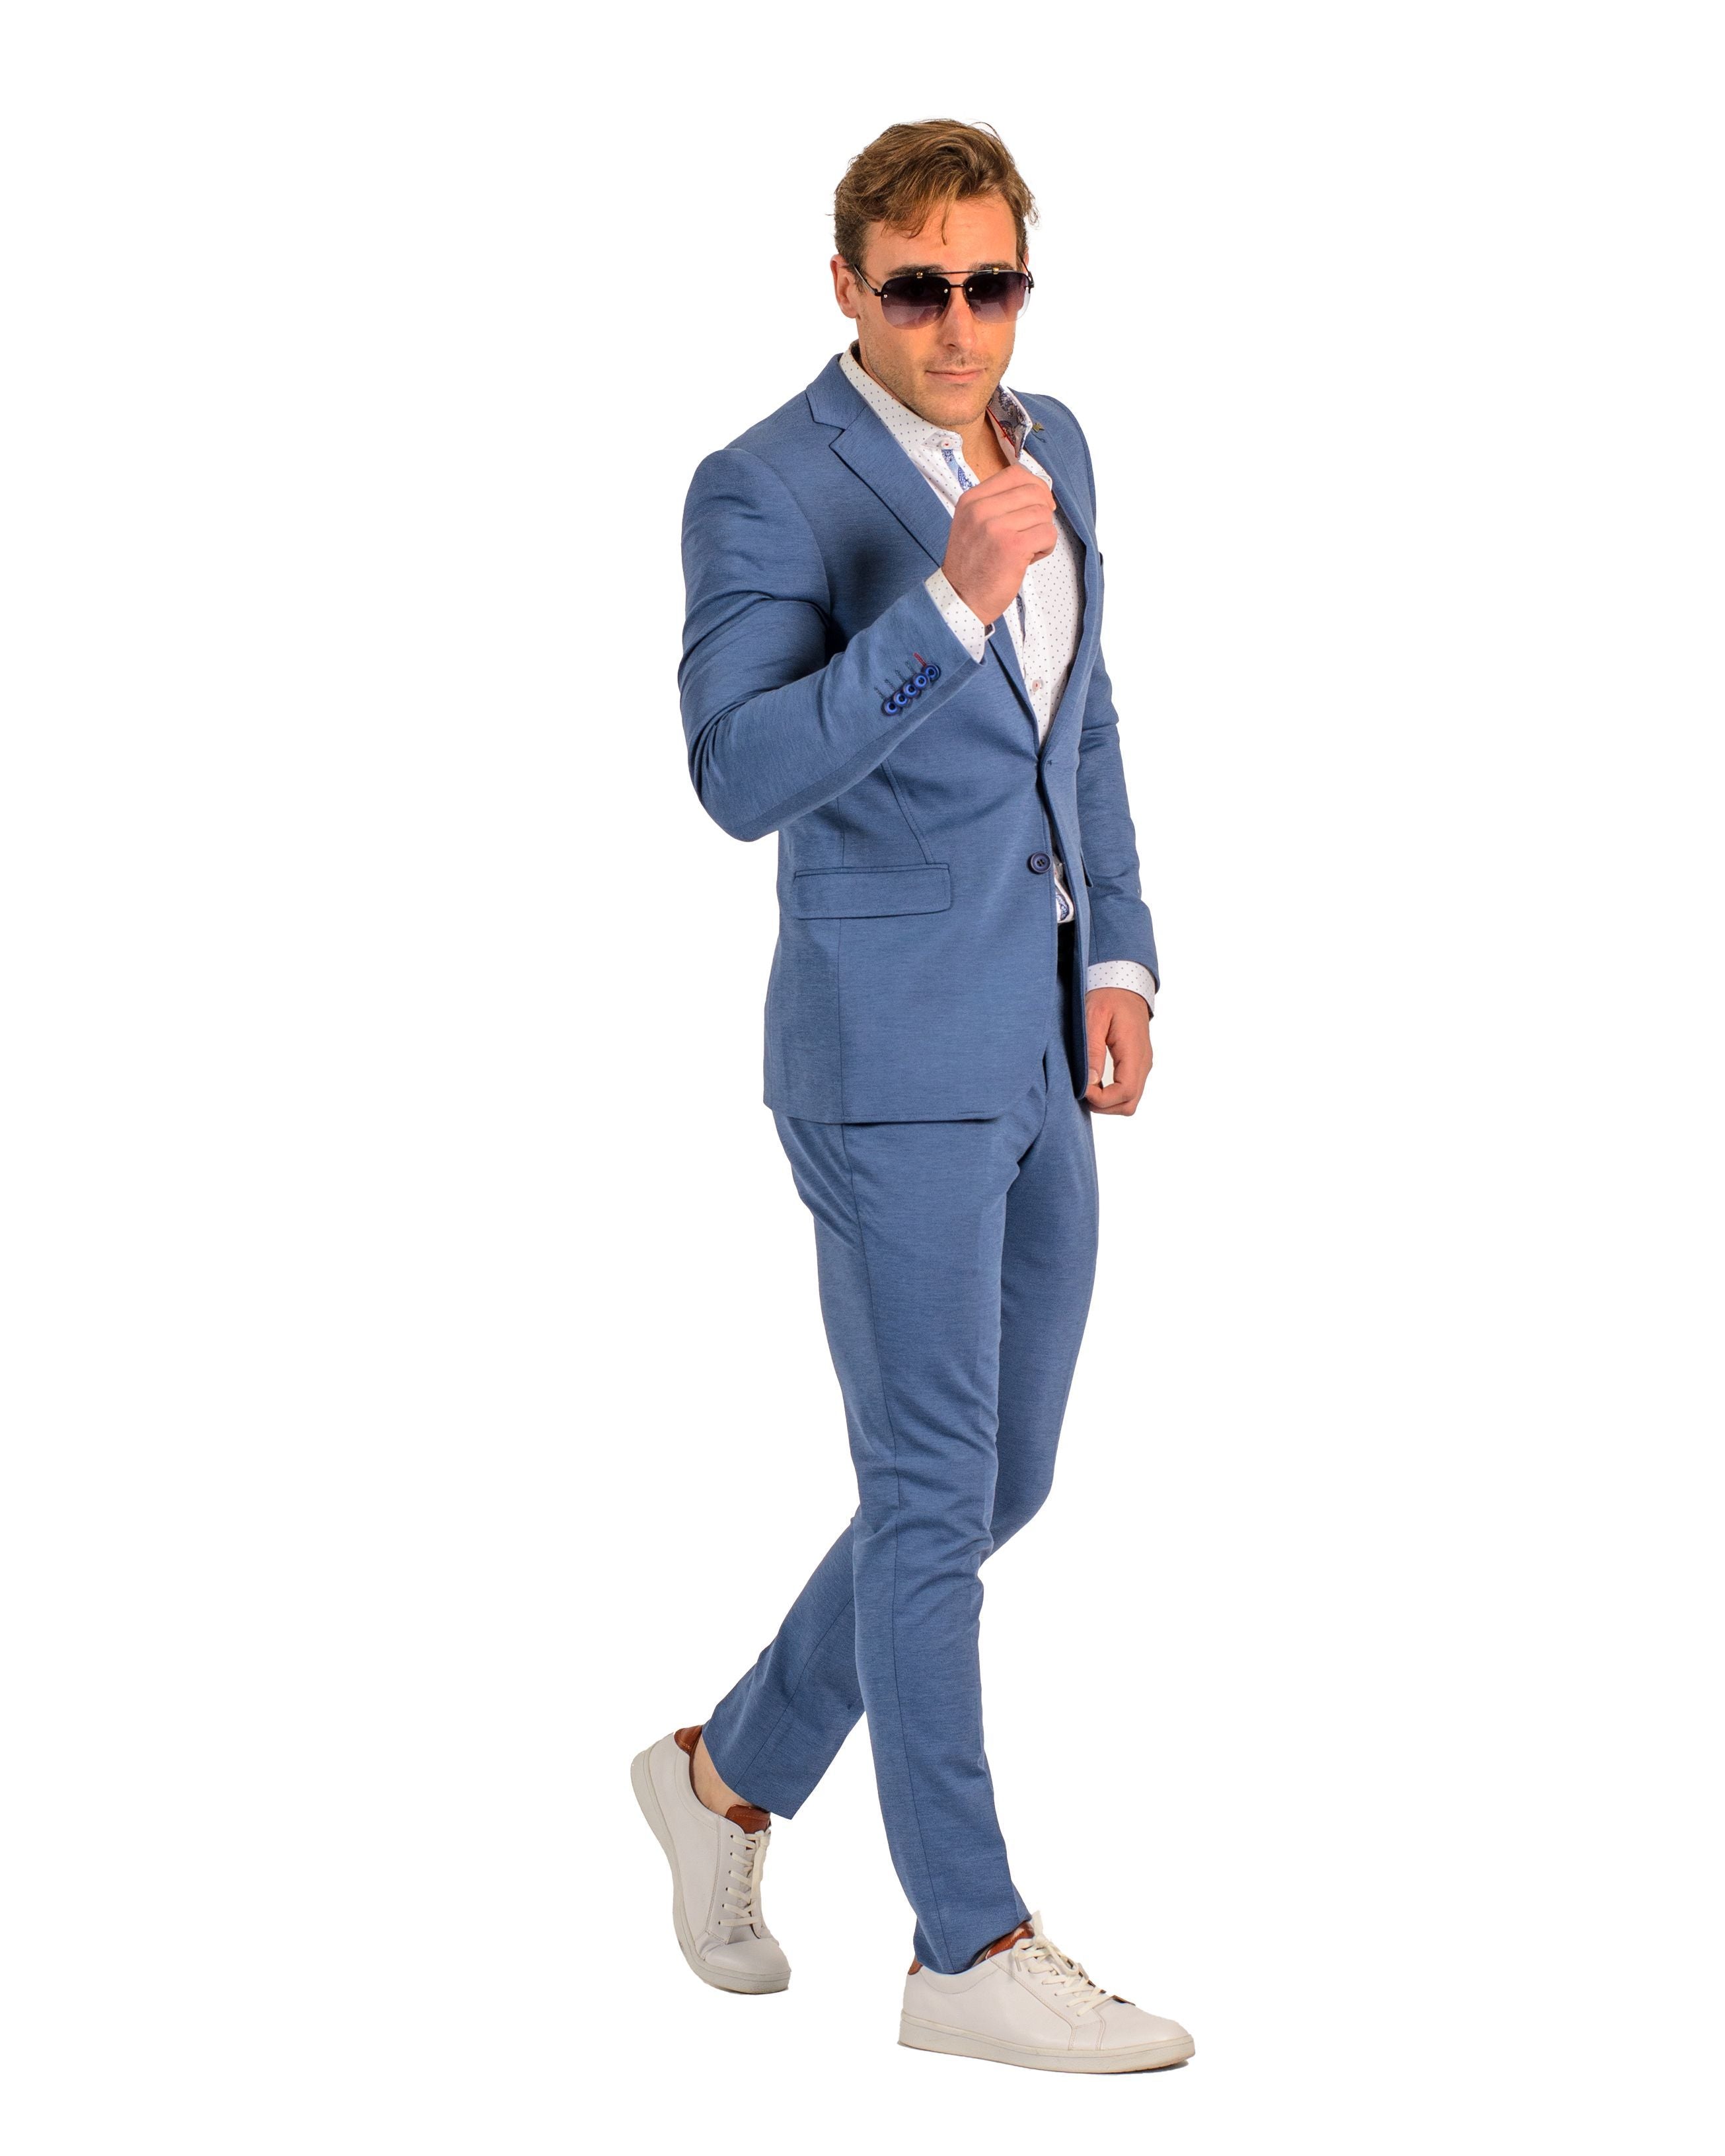 Modern Fit Designer Pattern Tuxedo Teal Blue Jacket Suit EJ Samuel JP115